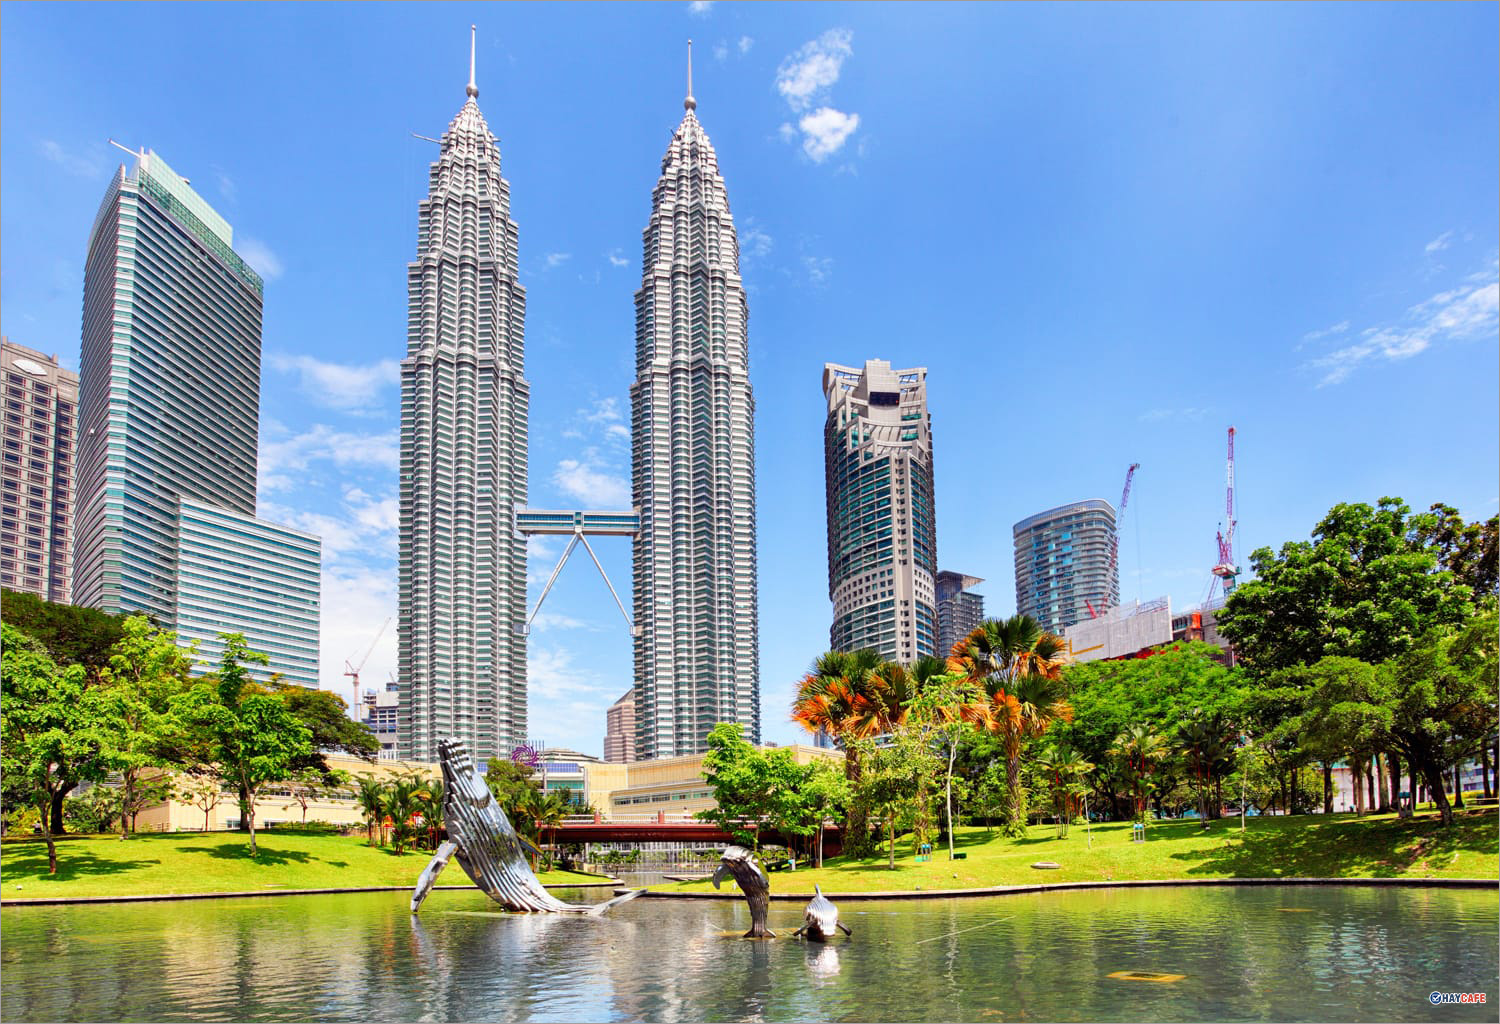 Hình Ảnh Tháp Đôi Malaysia Đẹp, Độc Đáo Ở Mọi Góc Nhìn